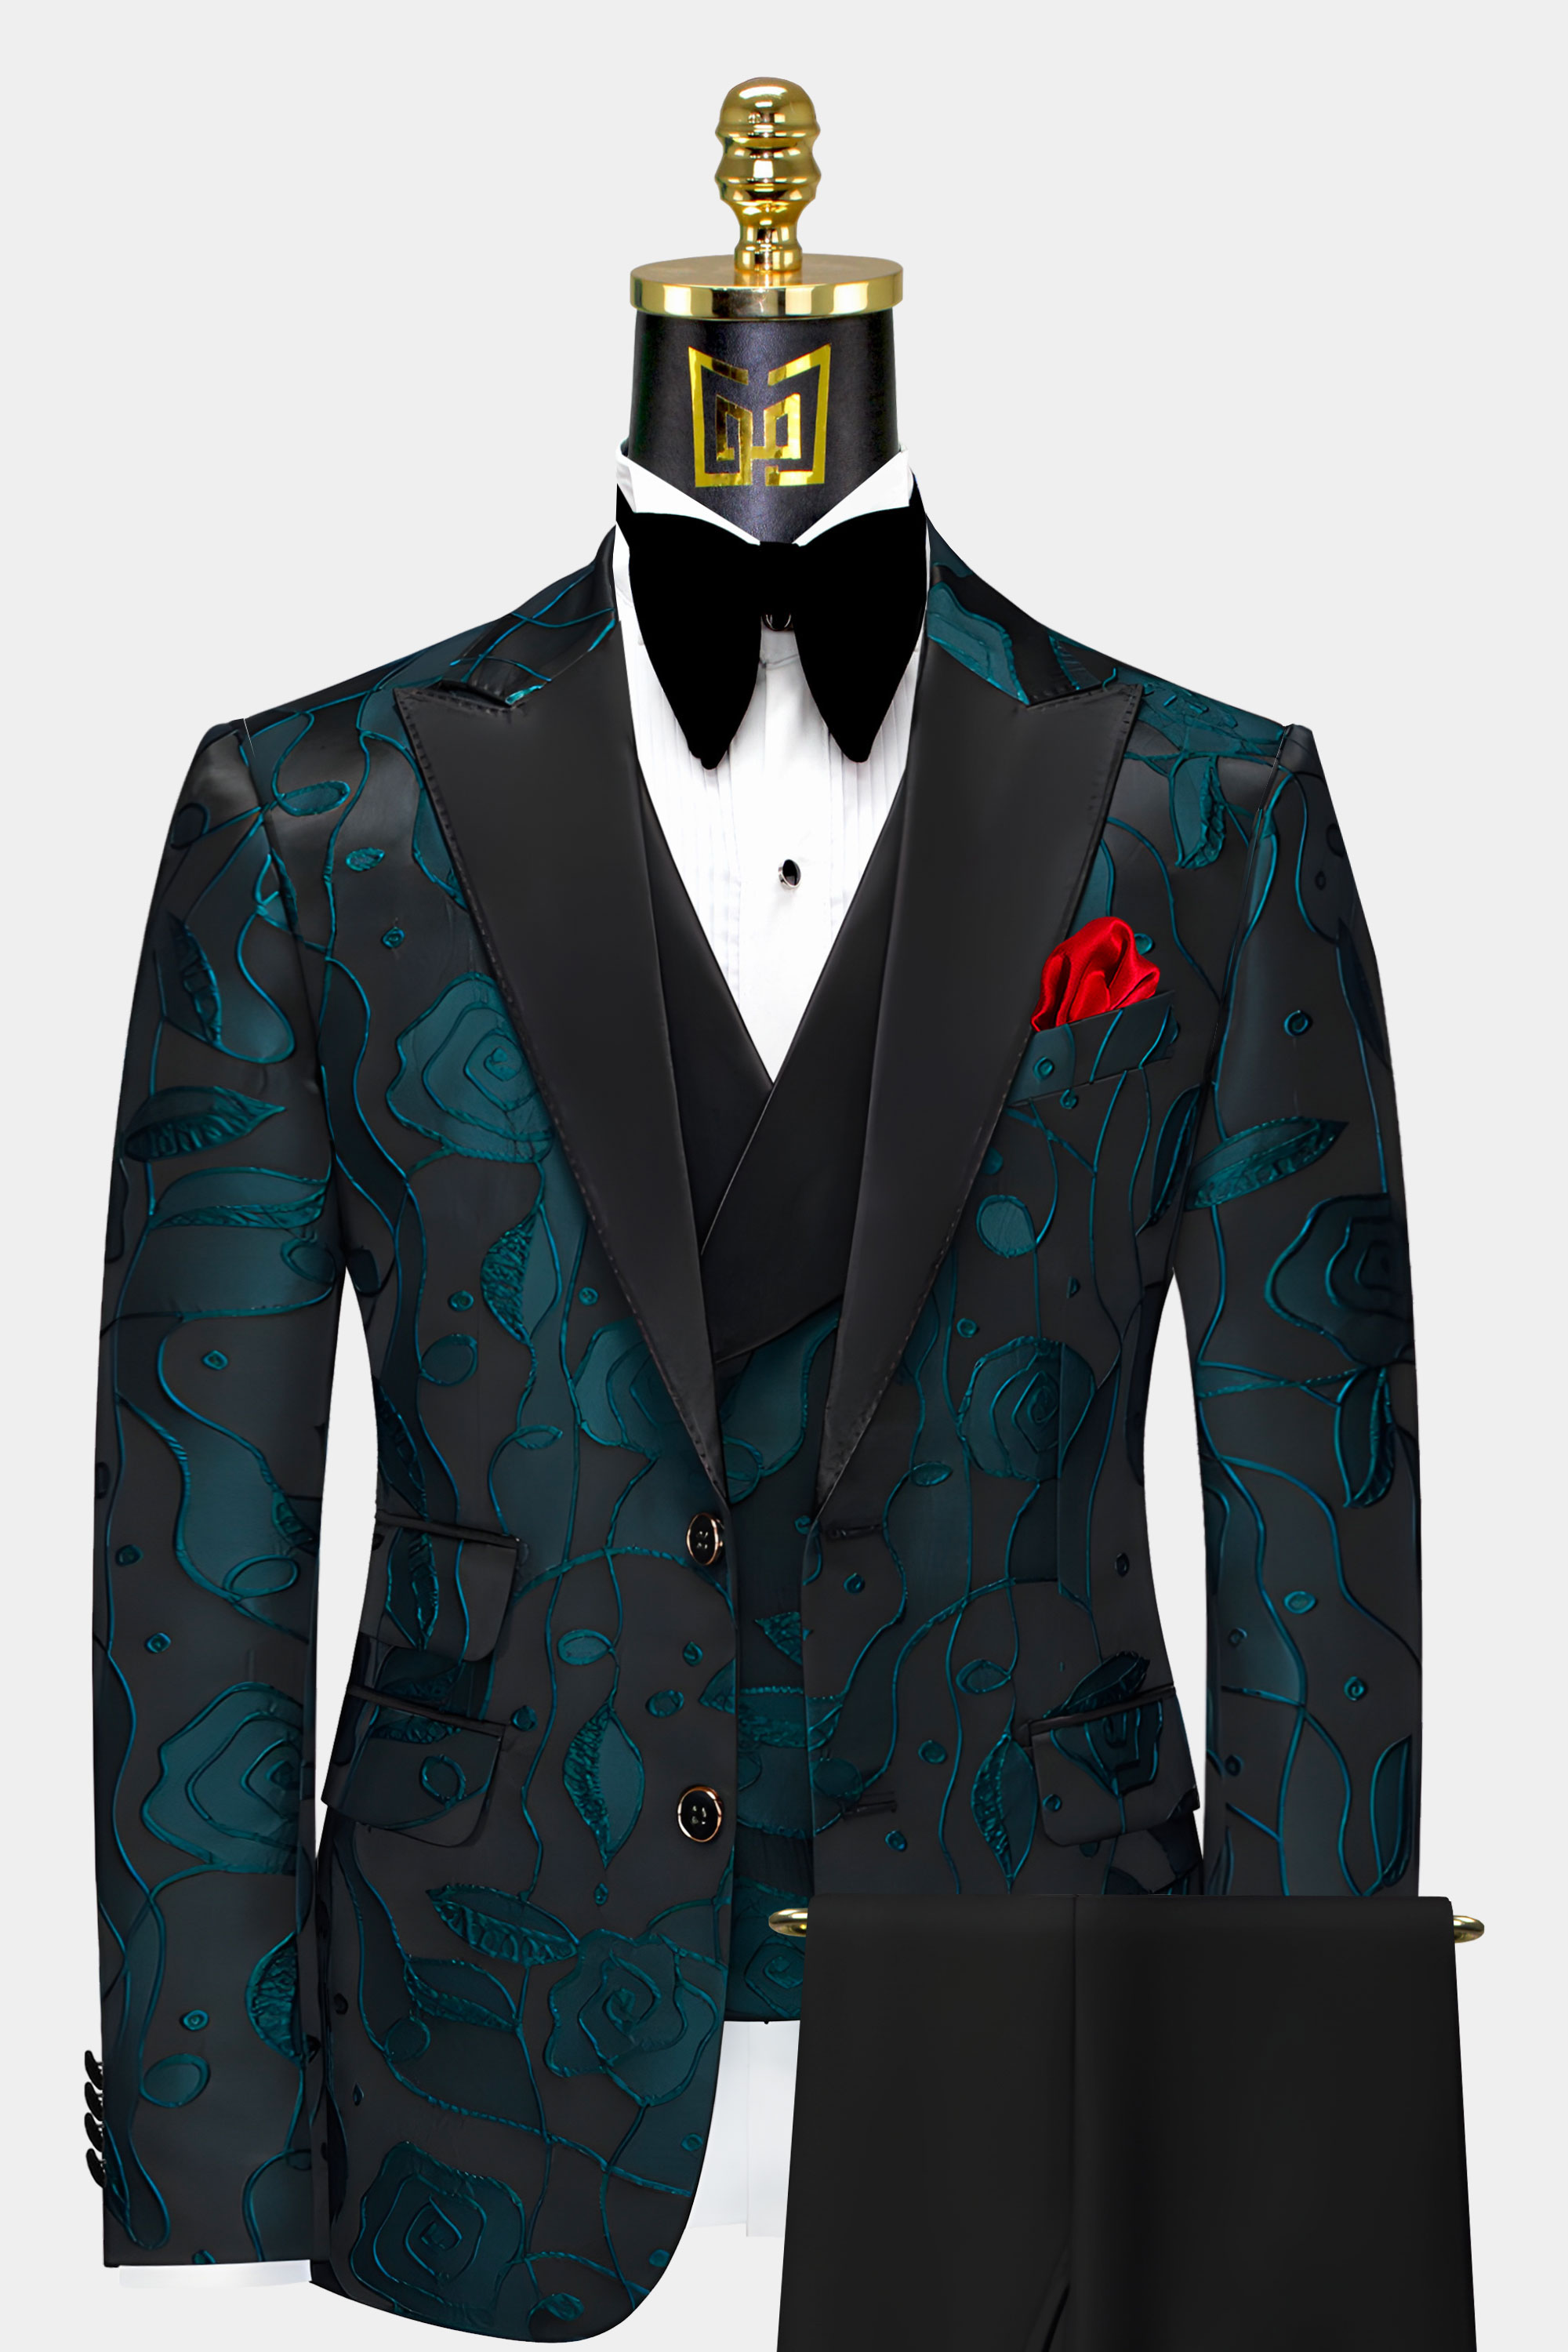 Black and Teal Tuxedo Suit | Gentleman's Guru